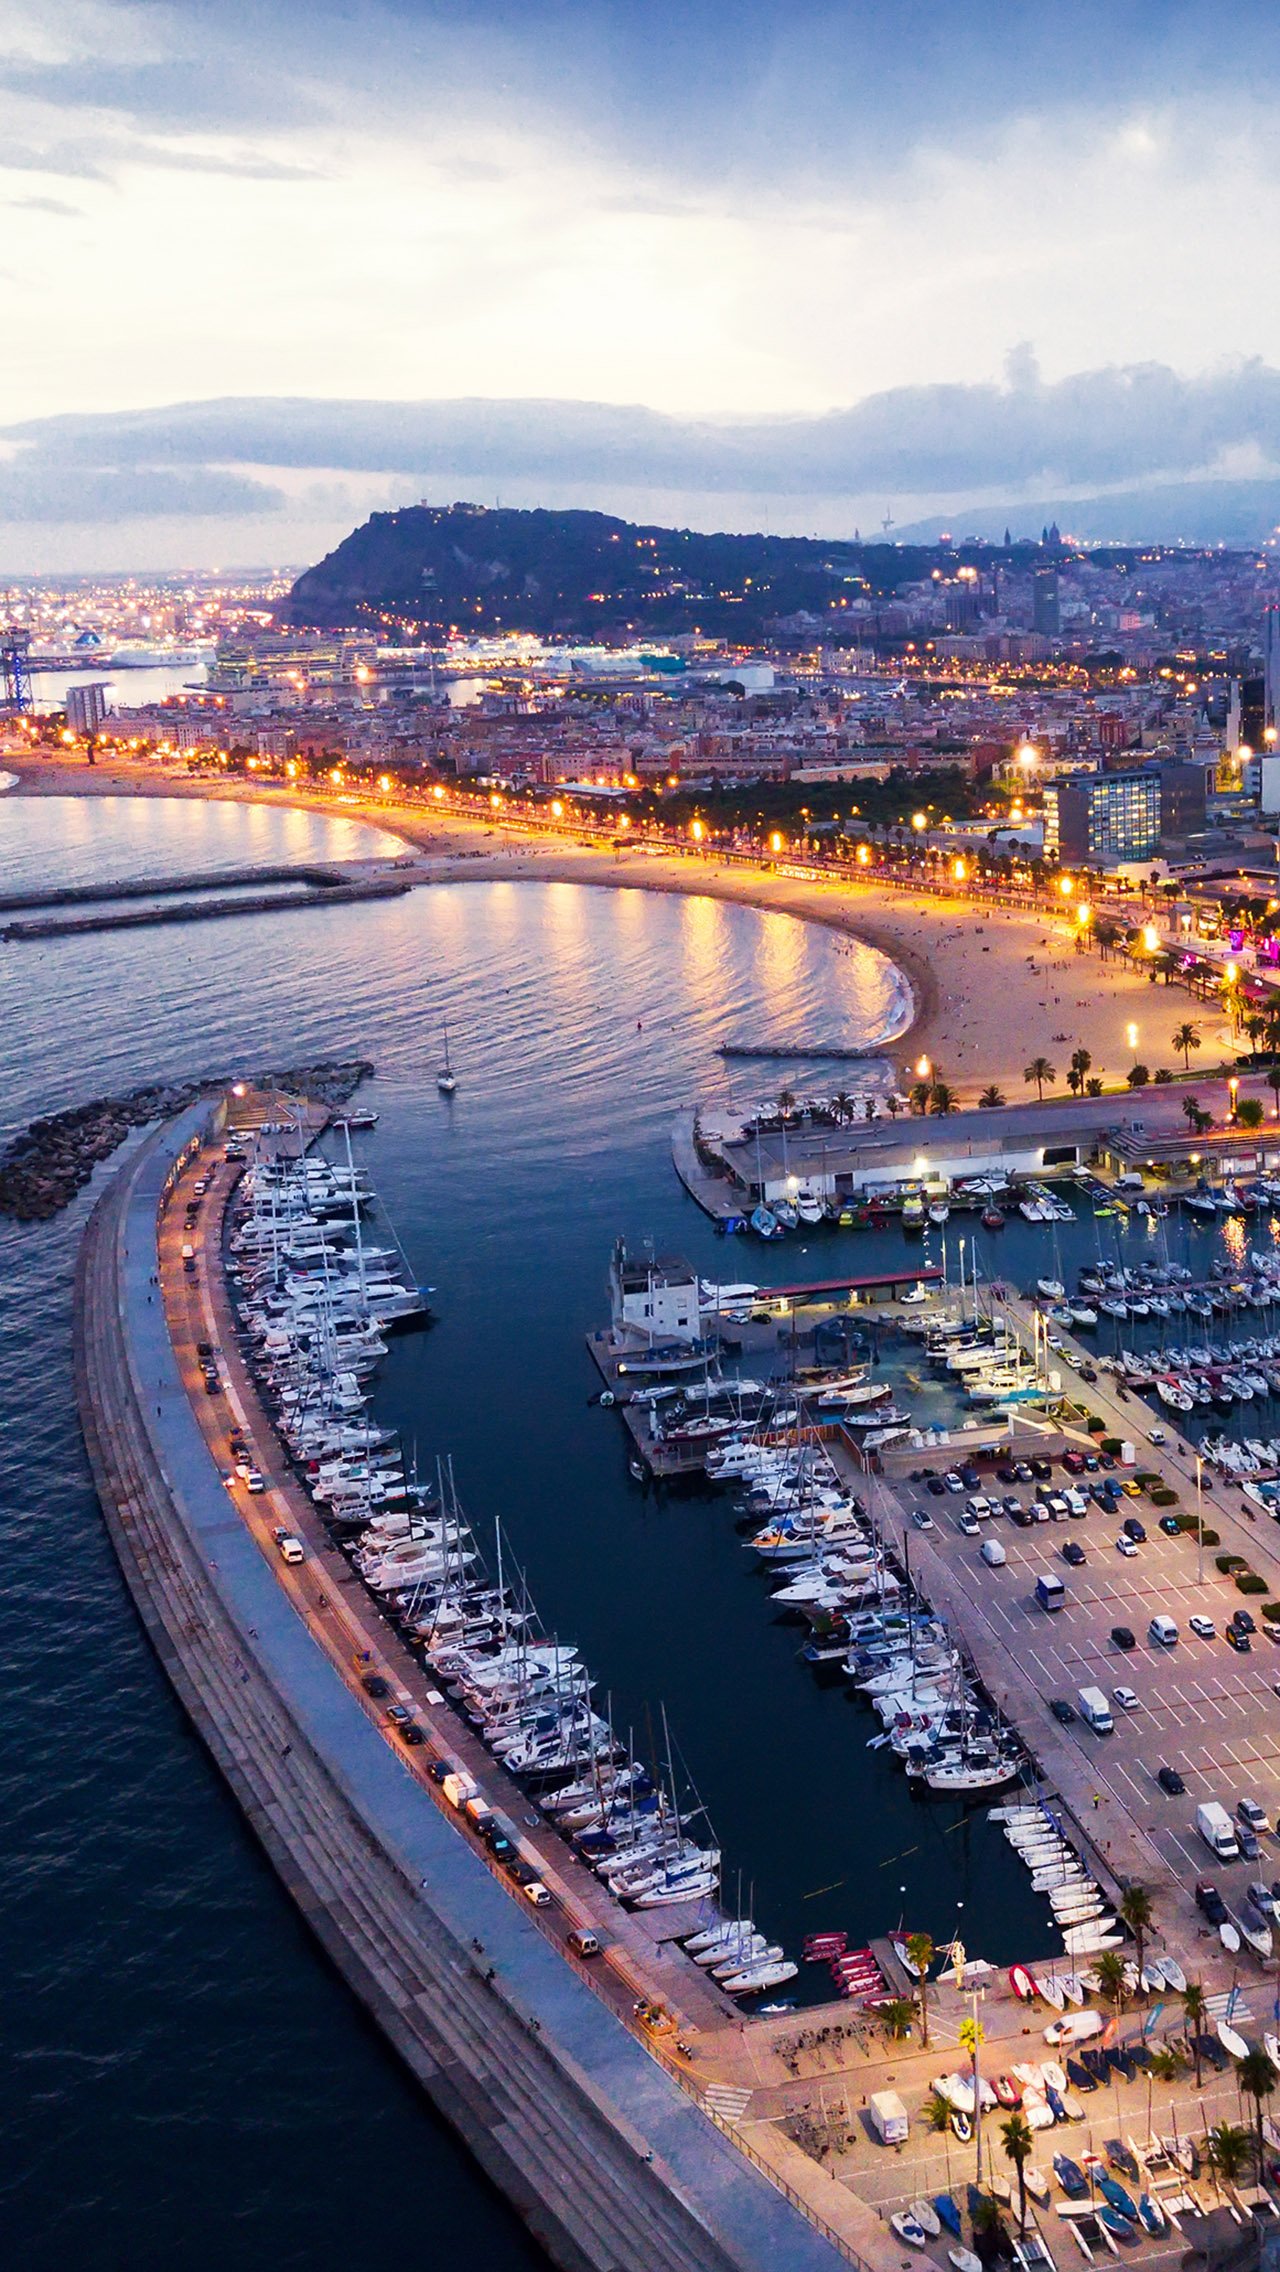 Отель расположен недалеко от пляжа и набережной Ситжеса, в 40 км от Барселоны.